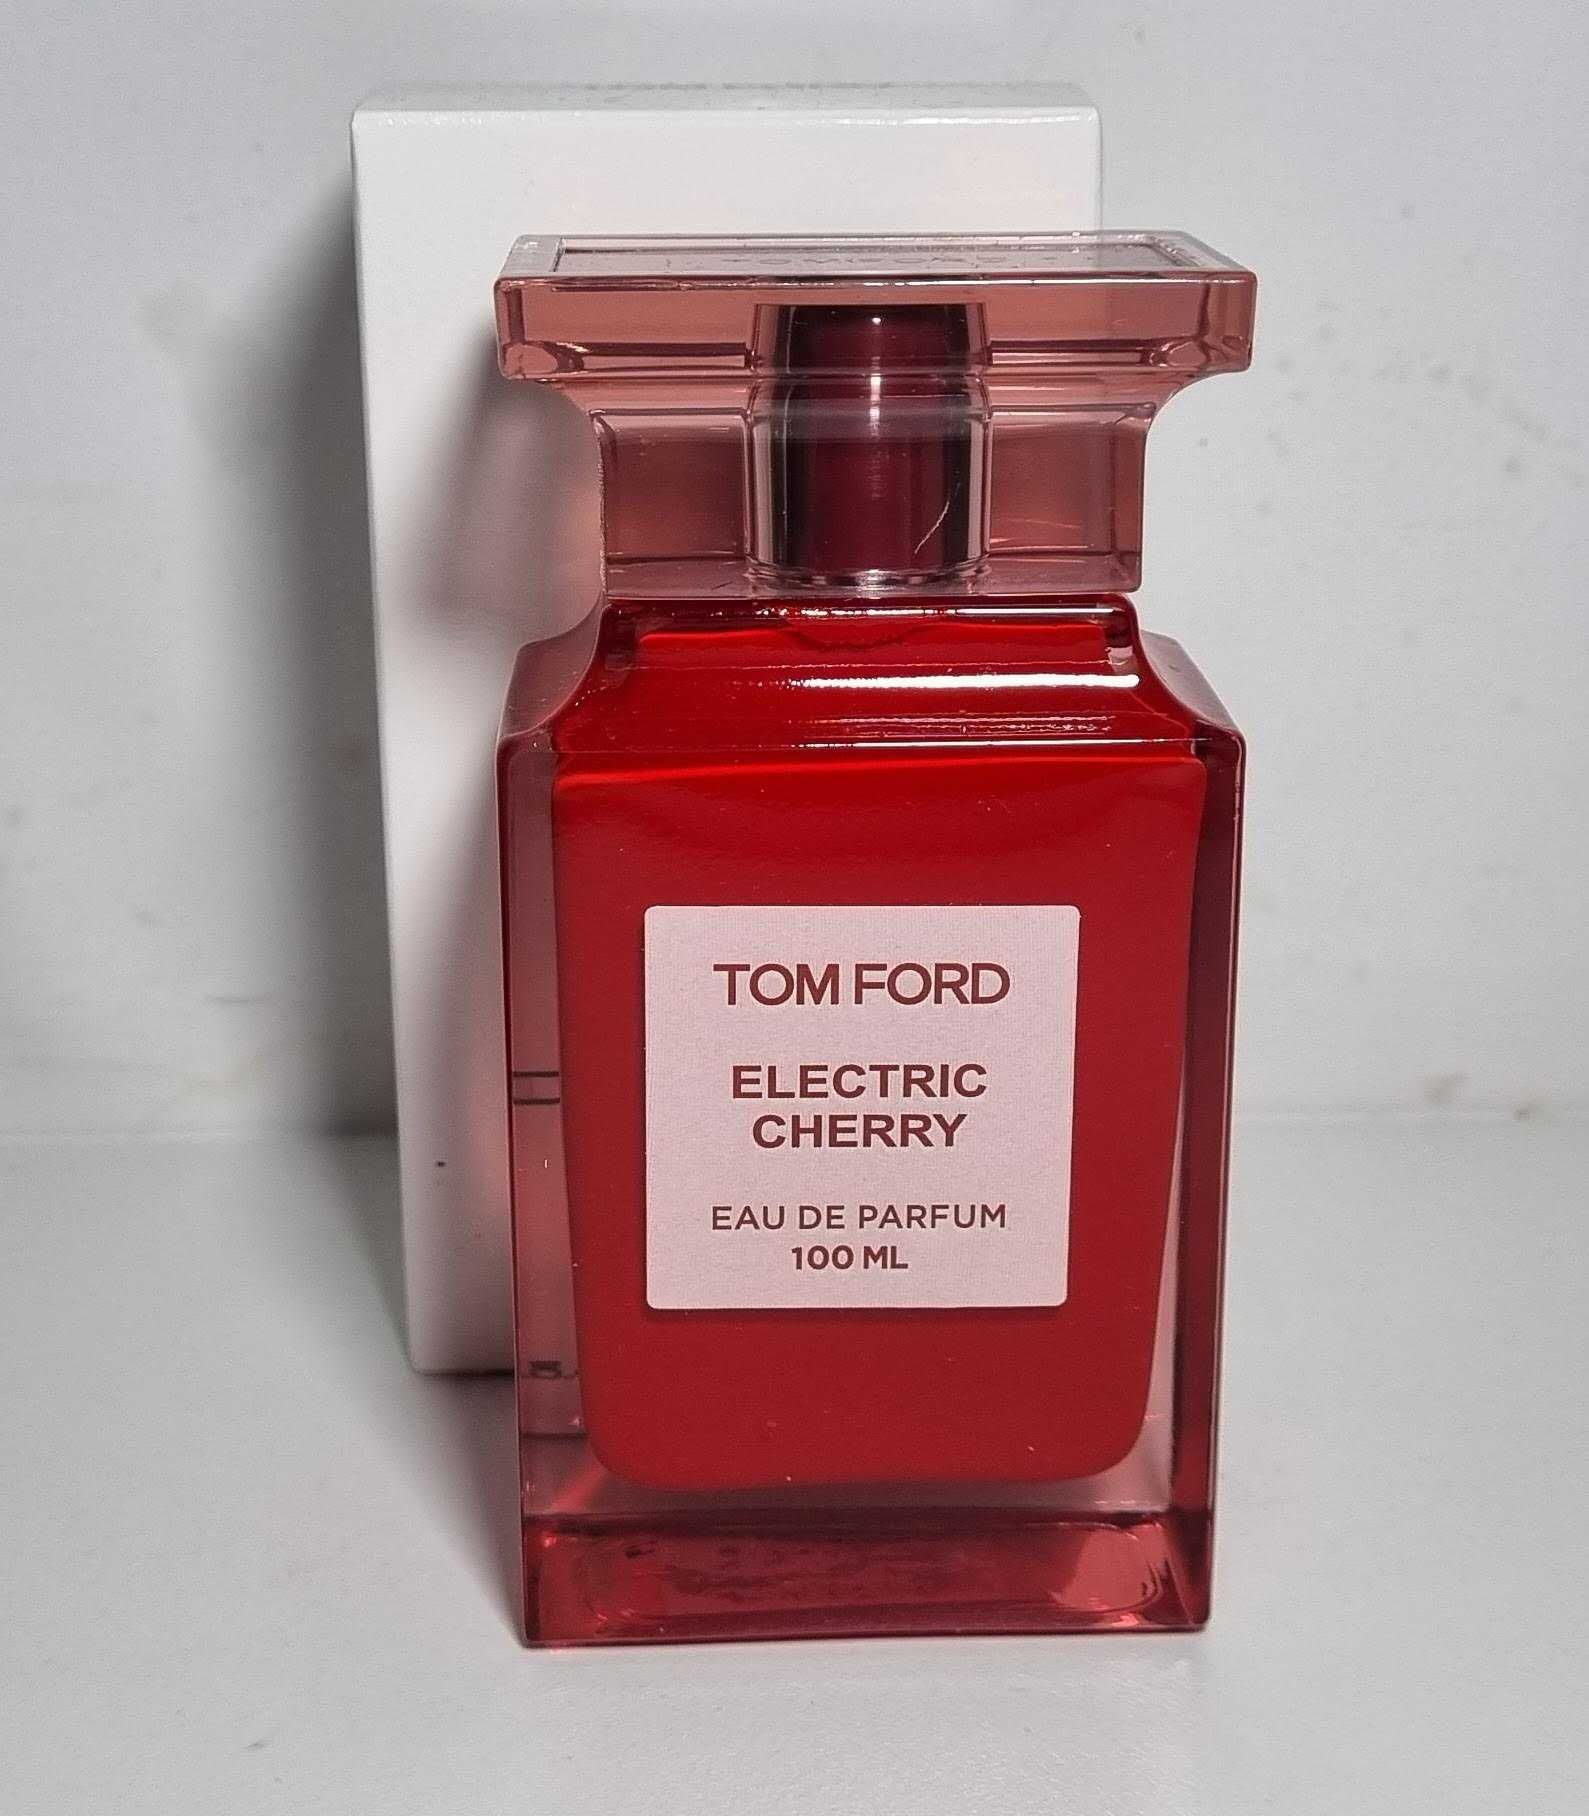 Parfum Tom Ford - Lavender Extreme, Ebene Fume, Cherry Smoke, Soleil B